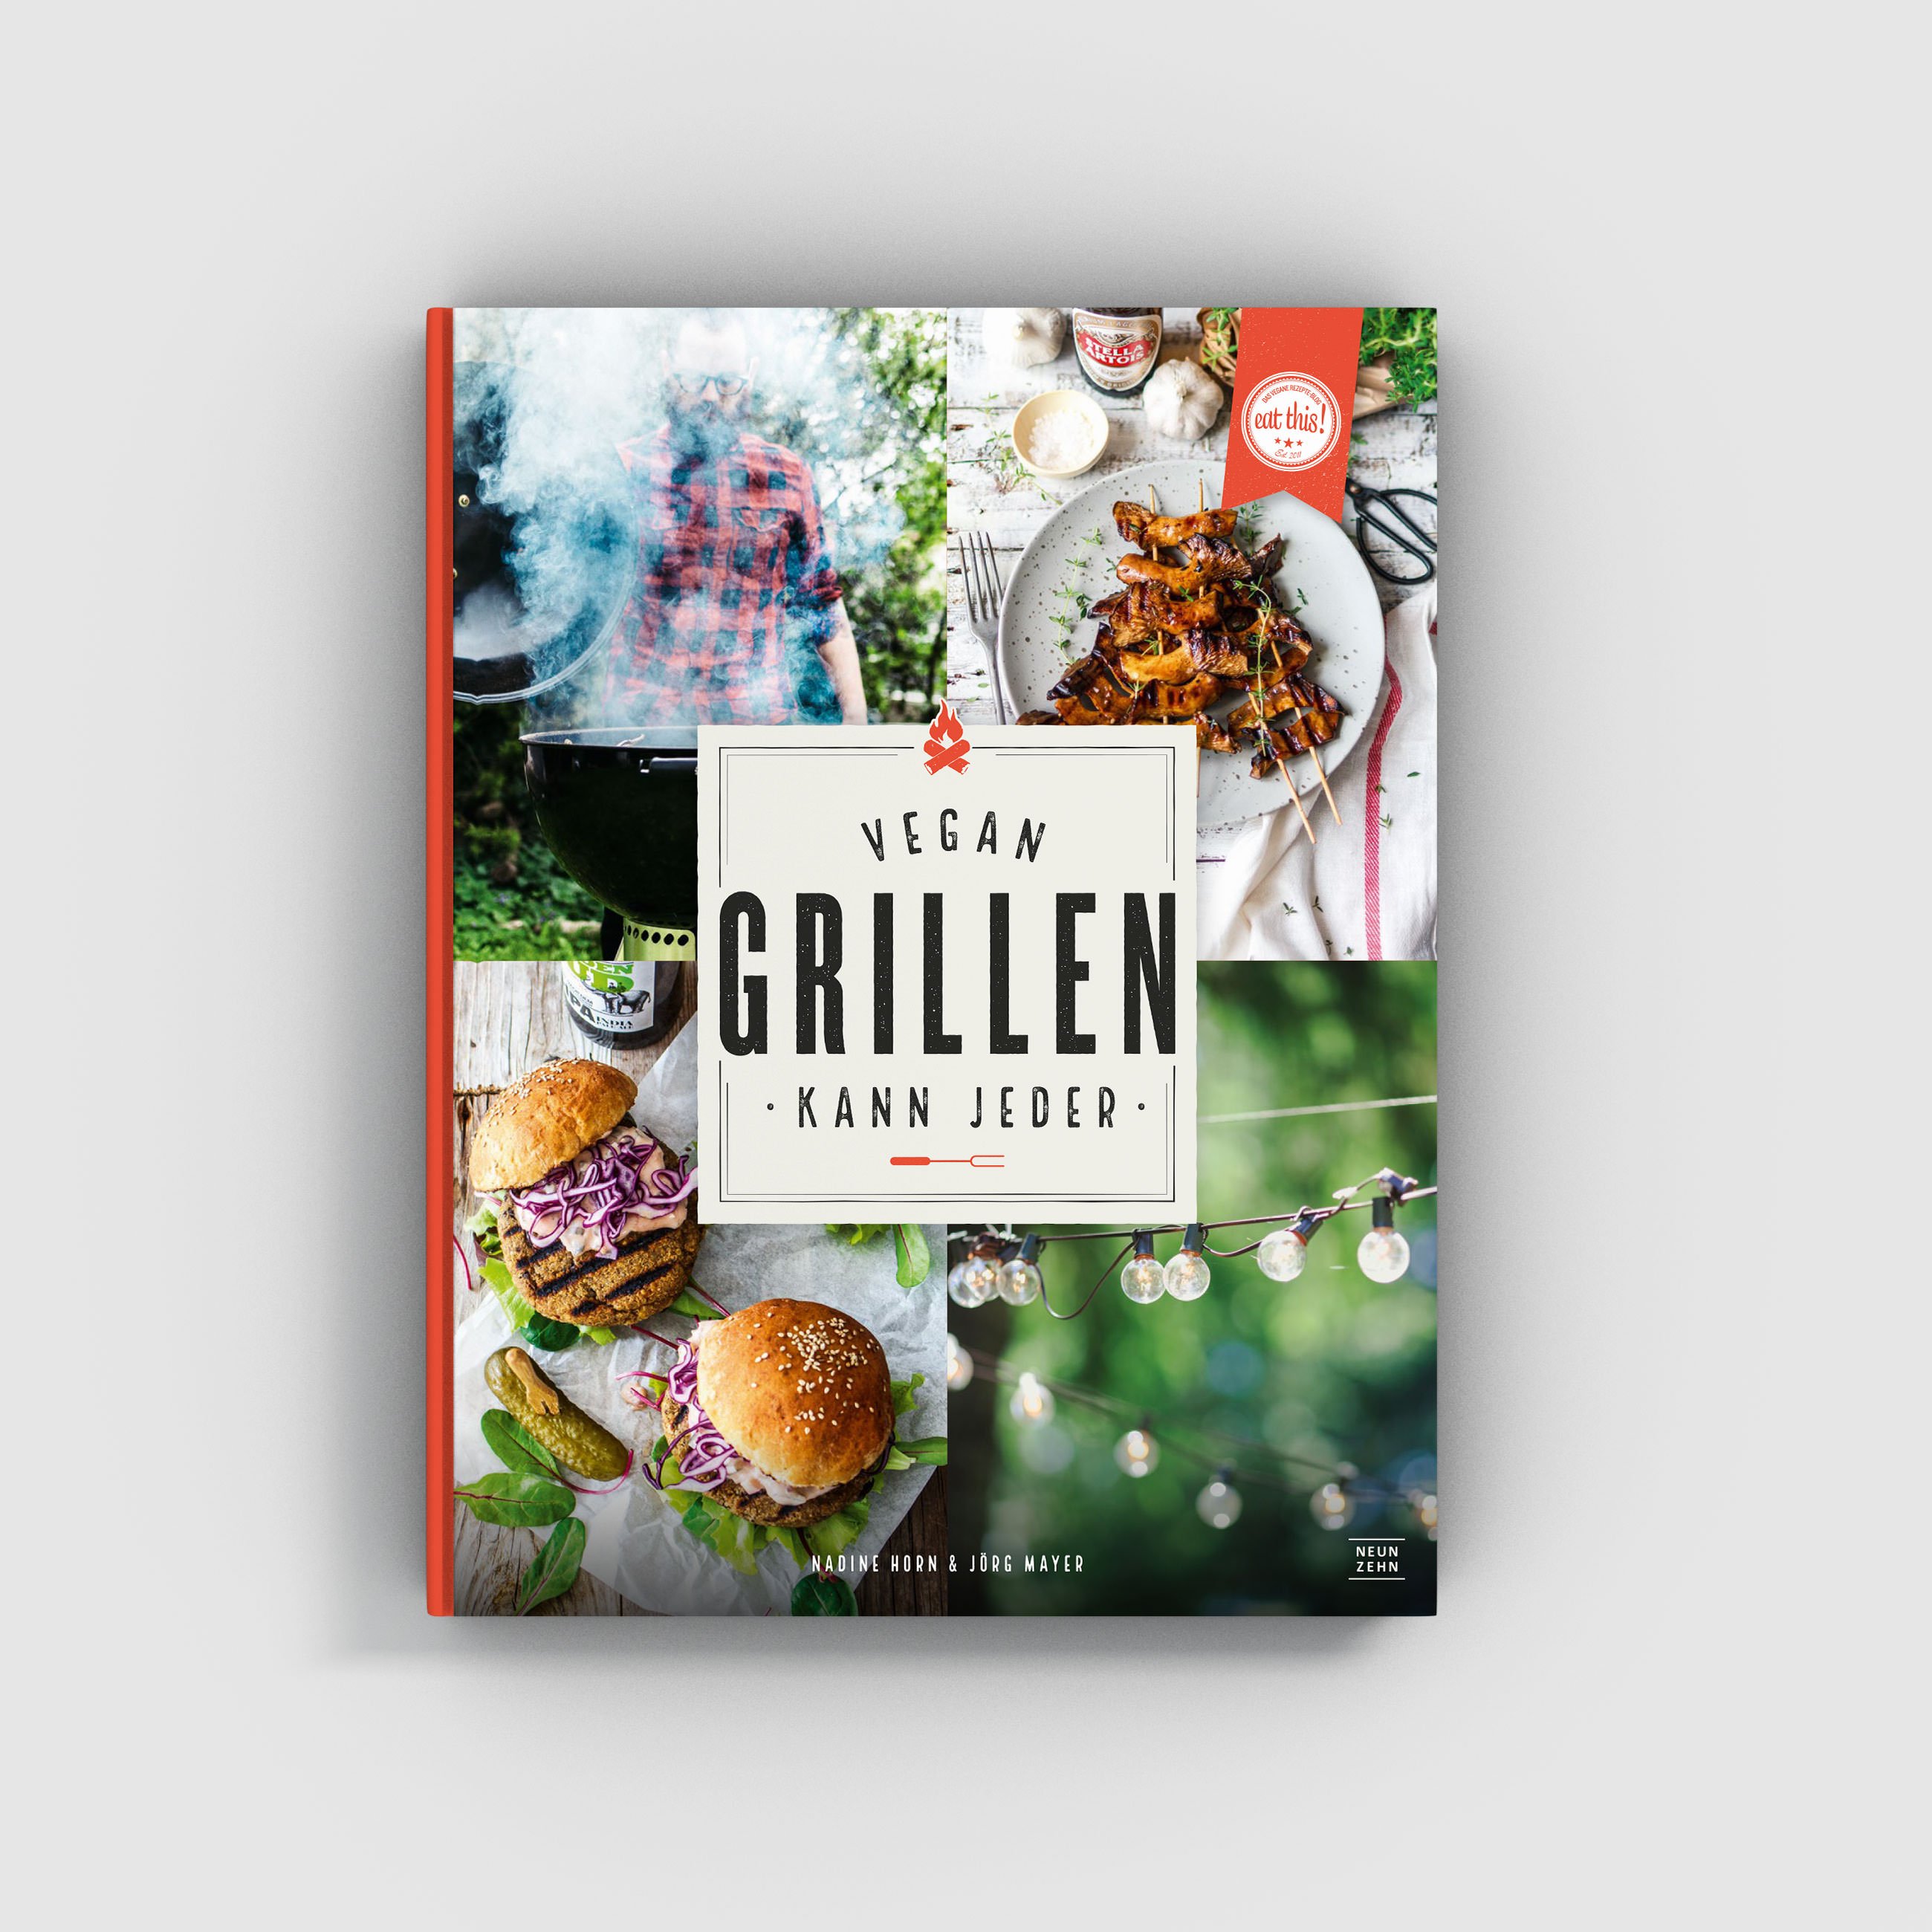 Vegan grillen kann jeder – Cover – Eat this Kochbuch